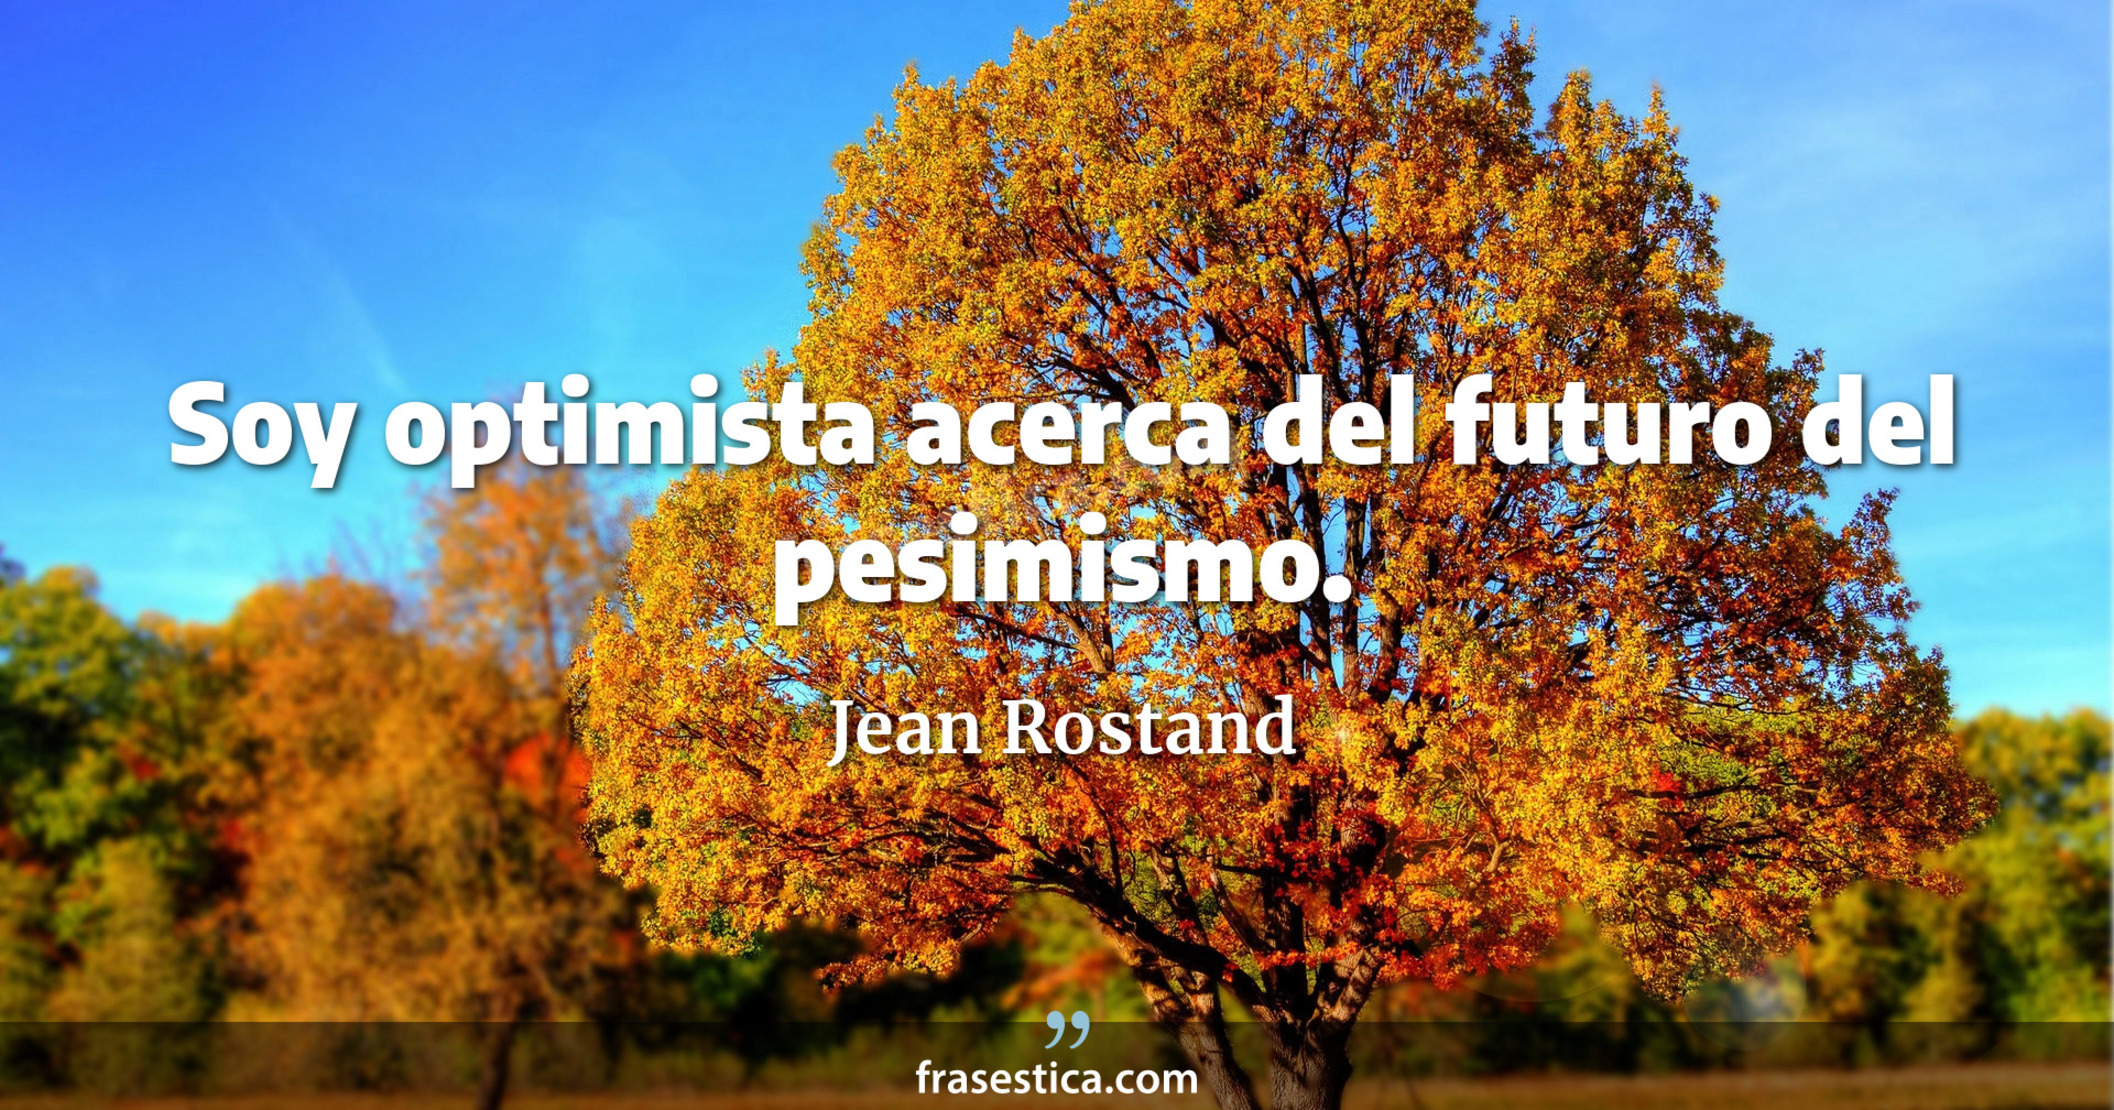 Soy optimista acerca del futuro del pesimismo. - Jean Rostand